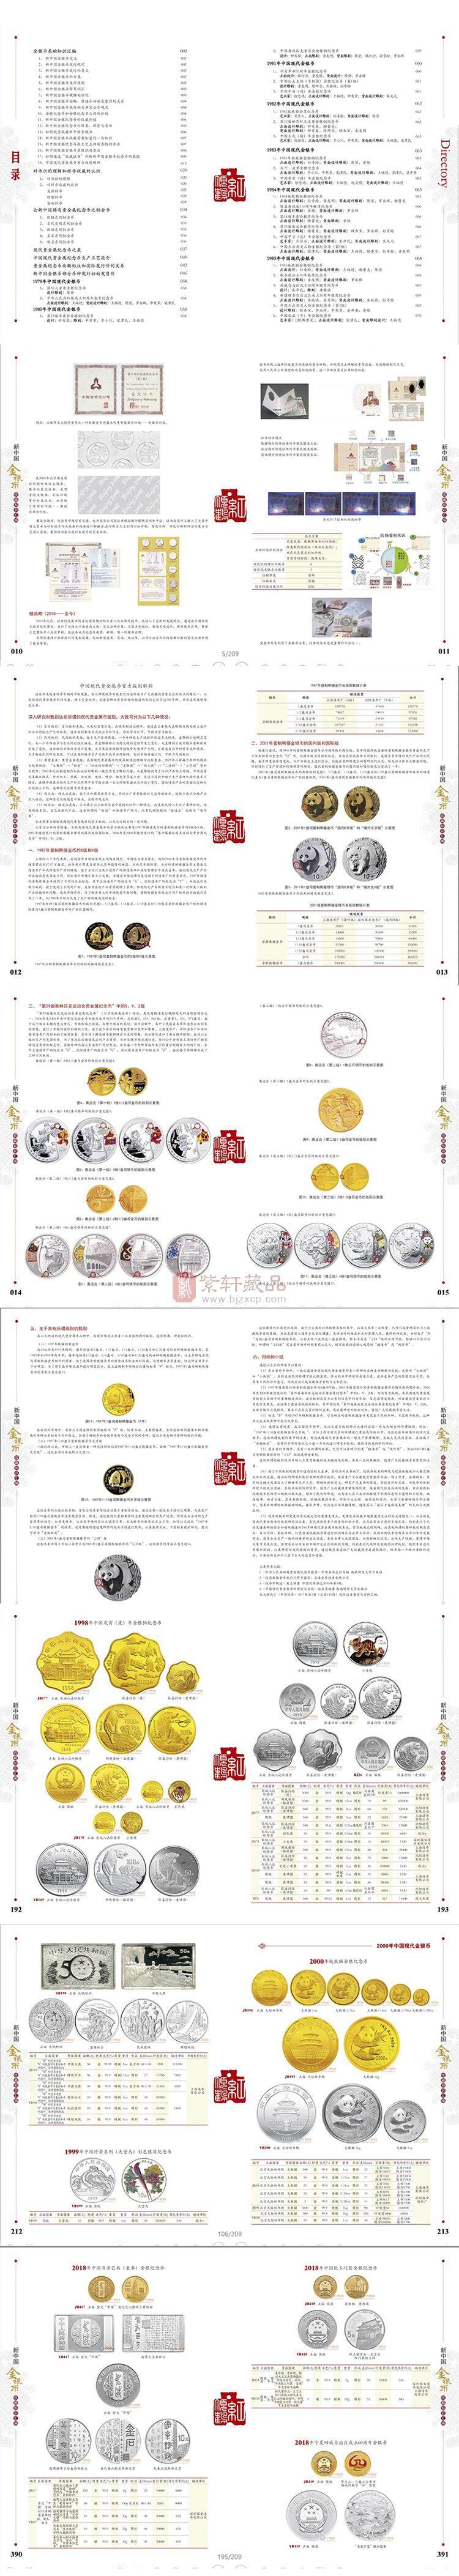 《新中国金银币收藏知识汇编》